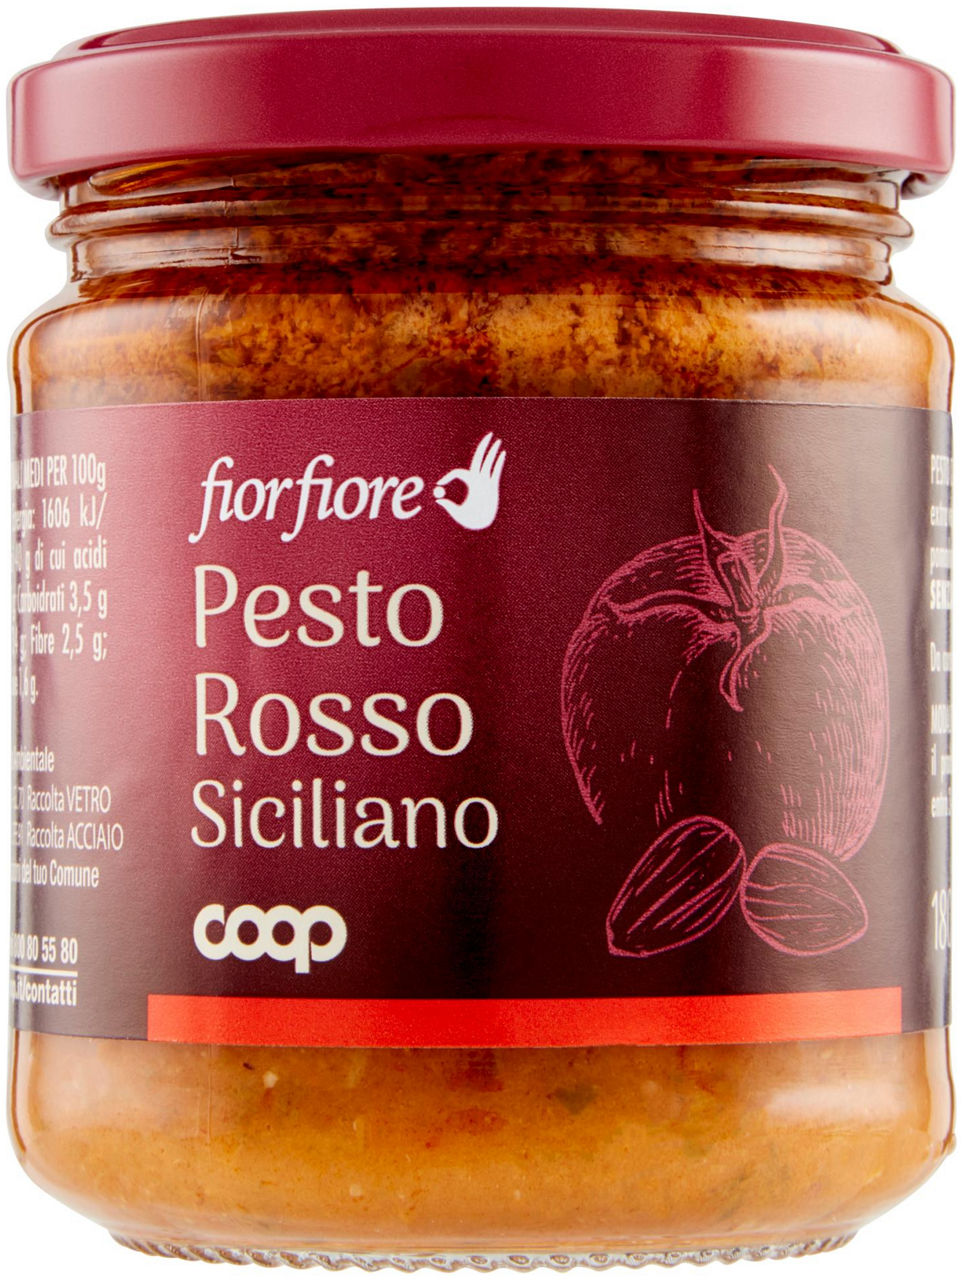 Pesto rosso siciliano fior fiore coop v.v.180g